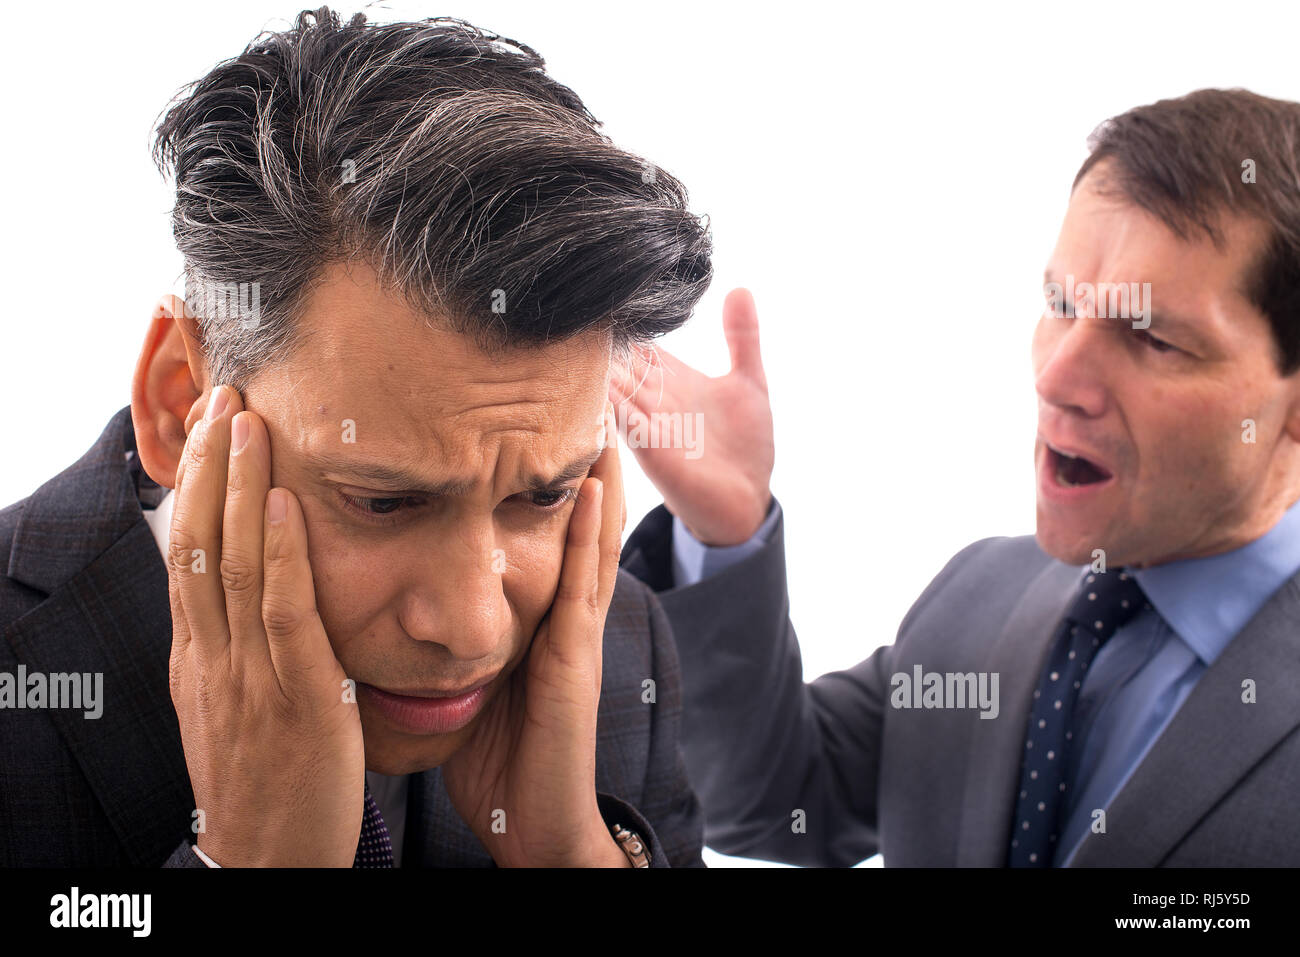 Zwei Geschäftsleute haben ein Argument vor einem ganz weißen Hintergrund: Ein Mann hat seinen Kopf in den Händen, der andere schreit ihn an. Stockfoto